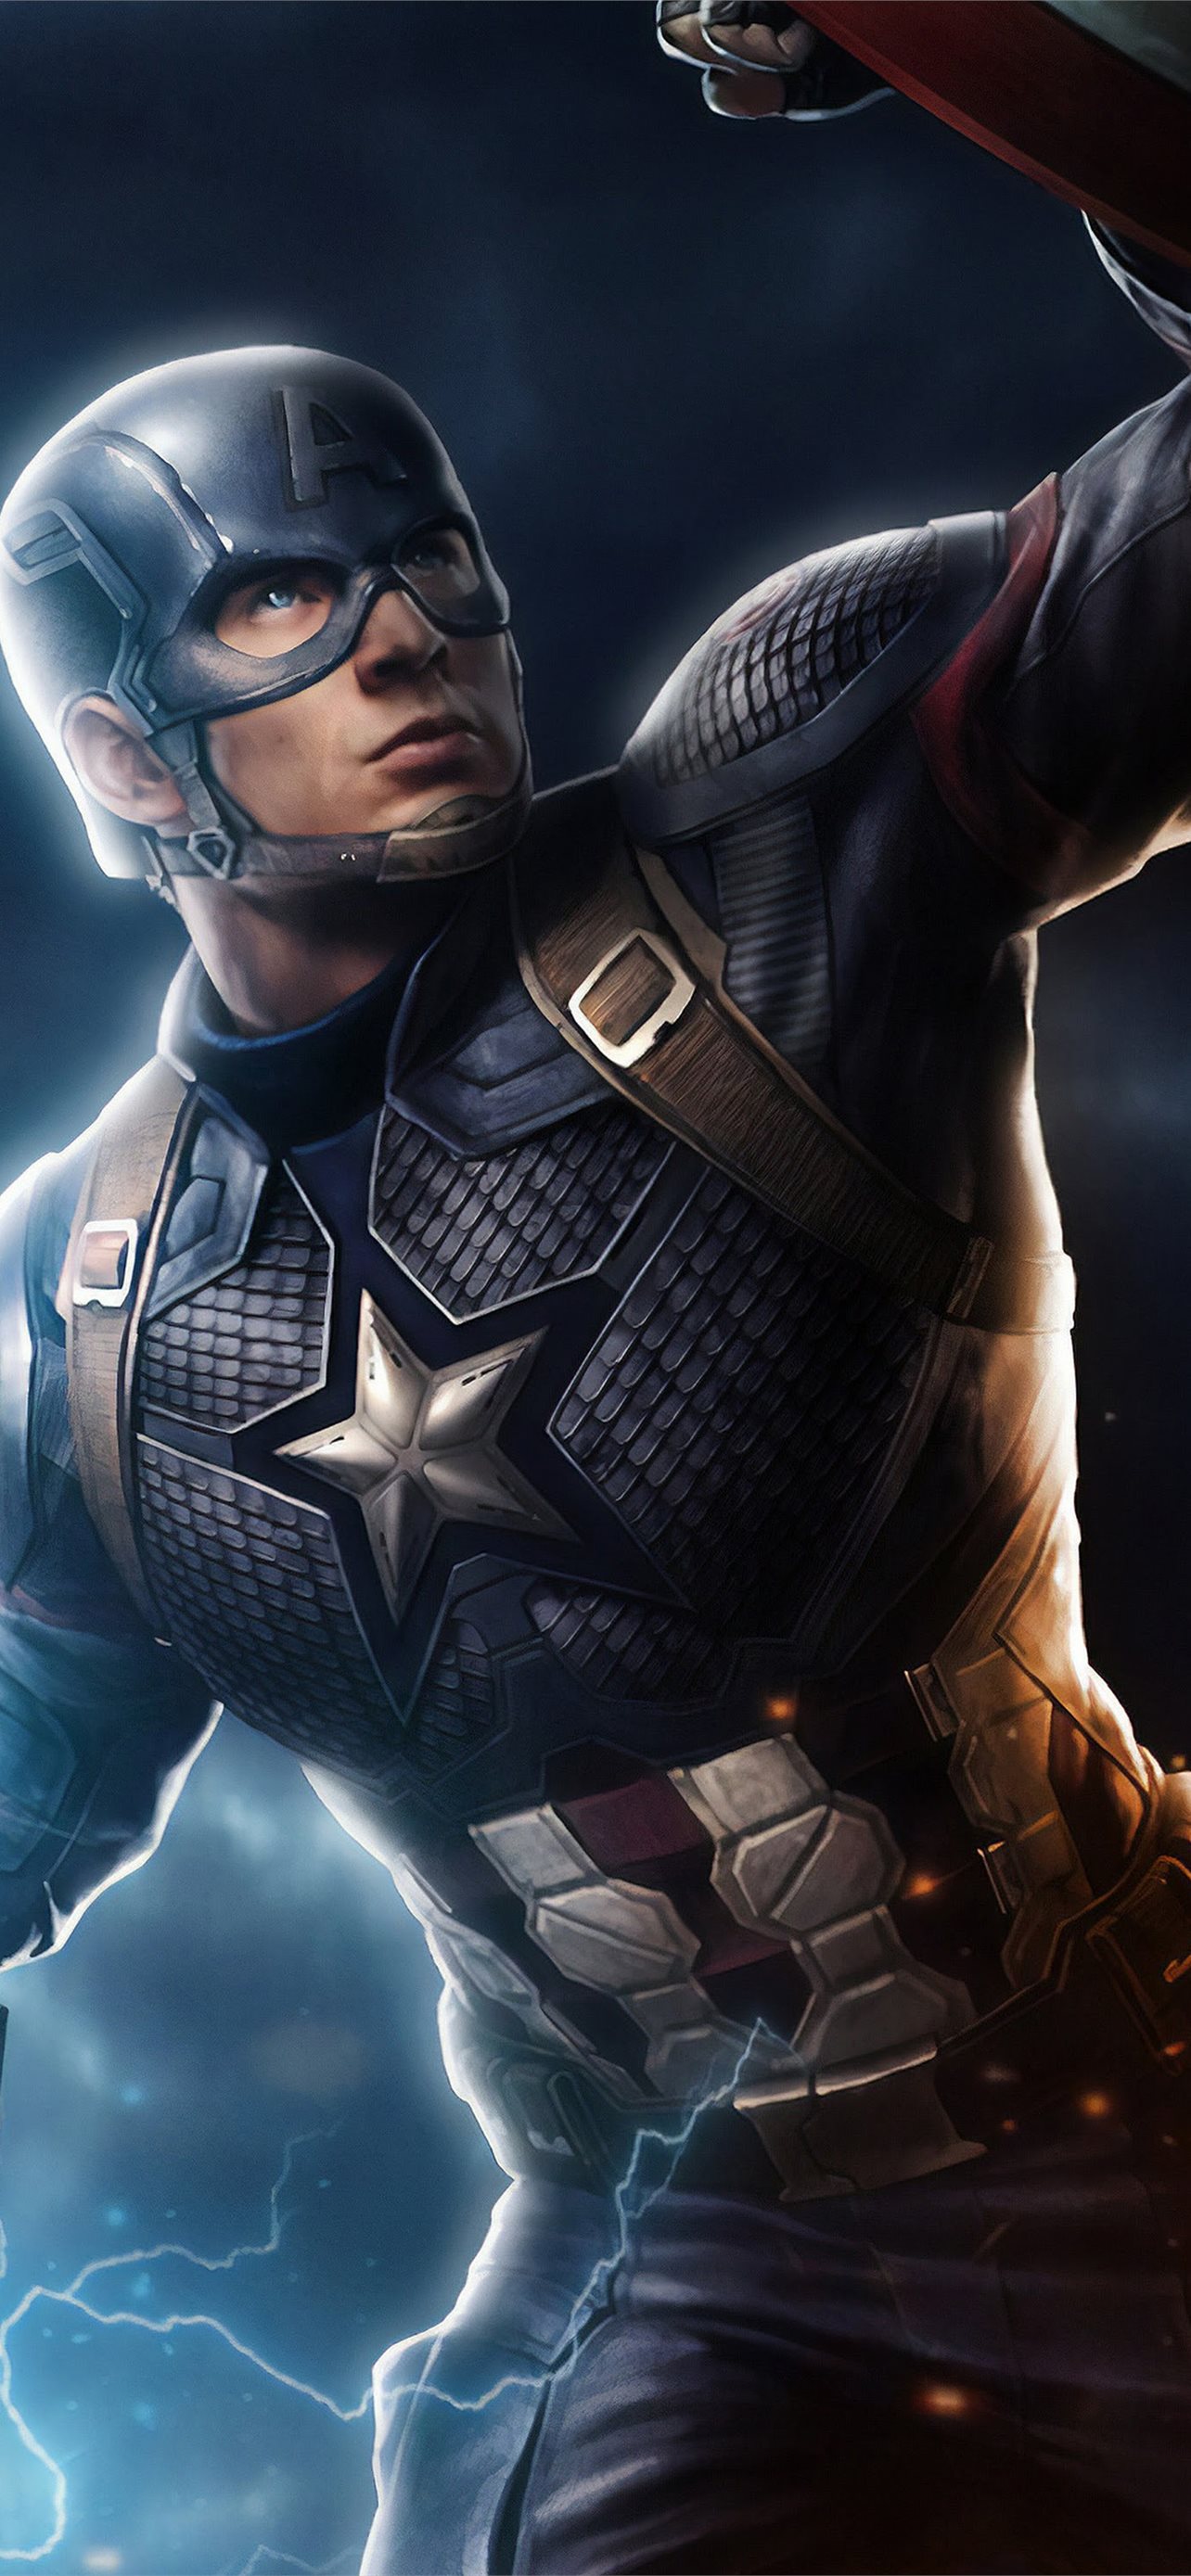 Avengers endgame captain america mjolnir hammer li iphone wallpapers free download